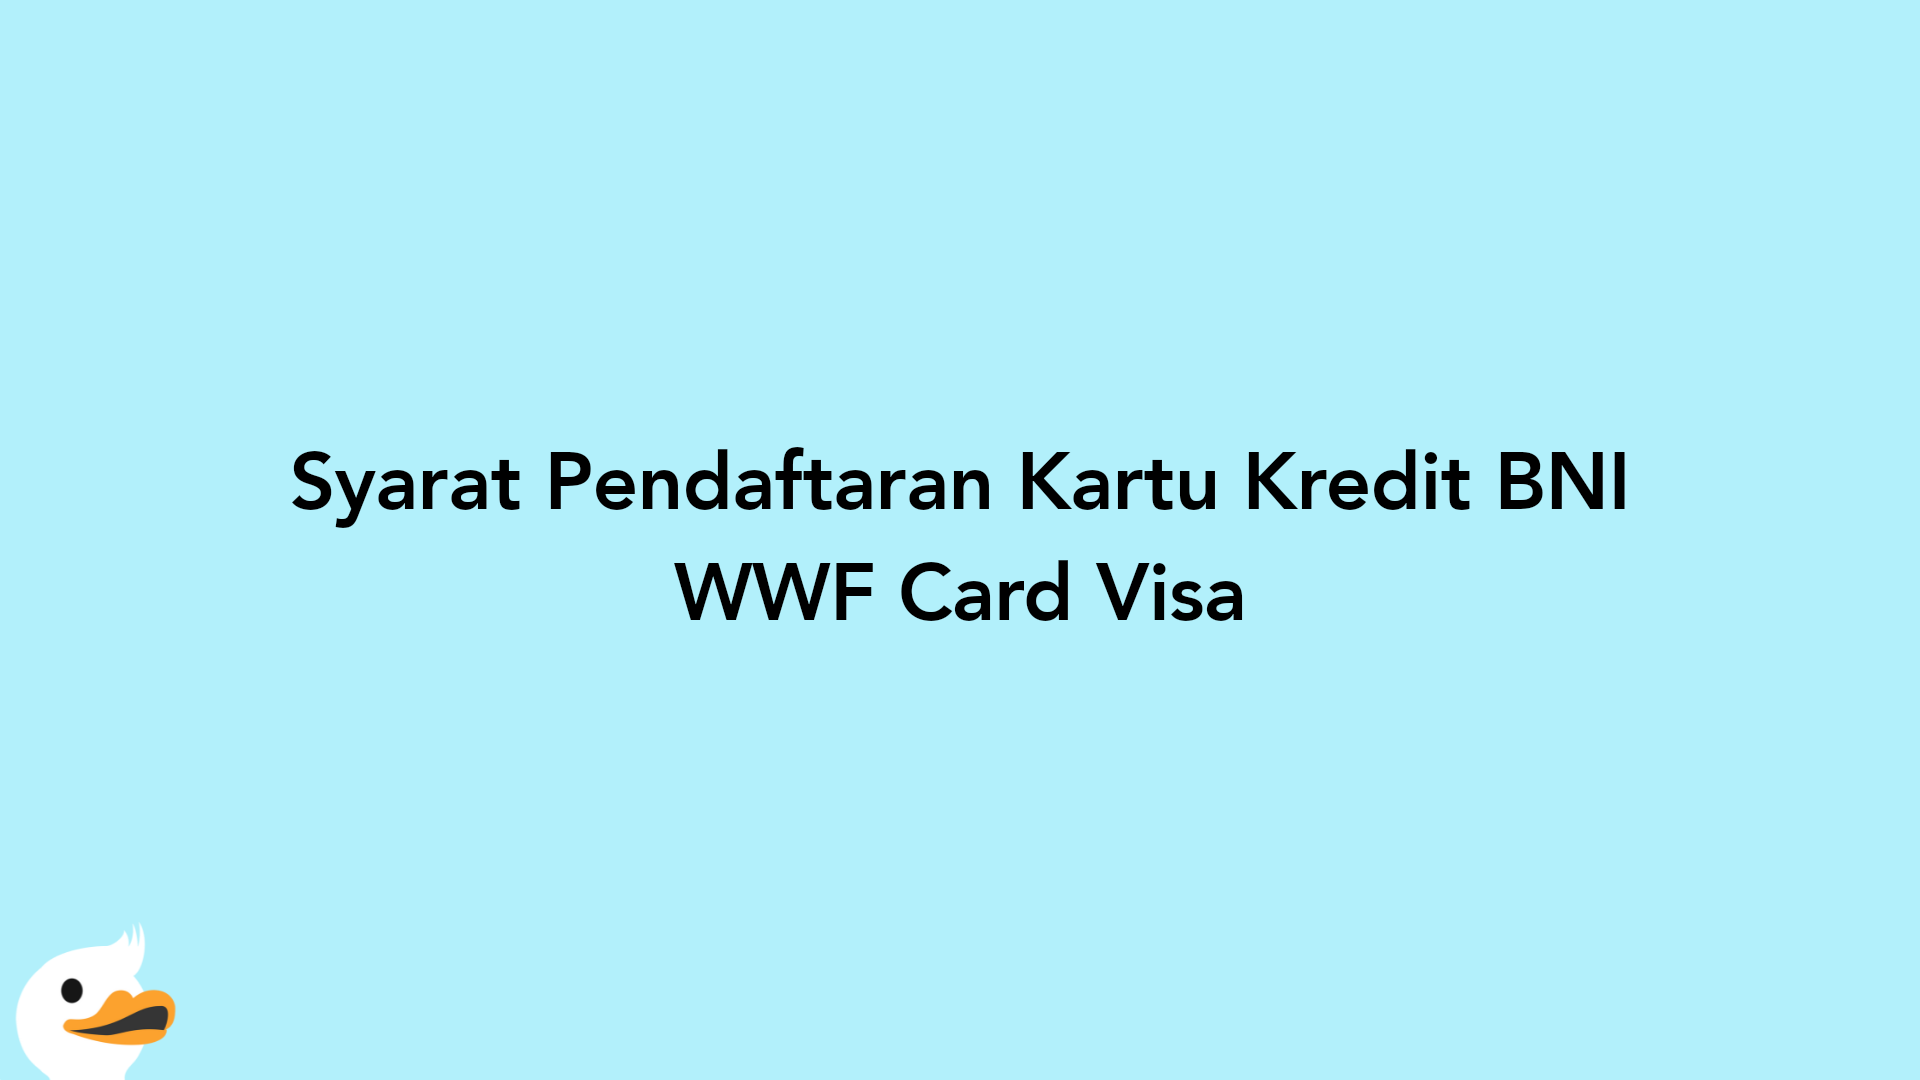 Syarat Pendaftaran Kartu Kredit BNI WWF Card Visa